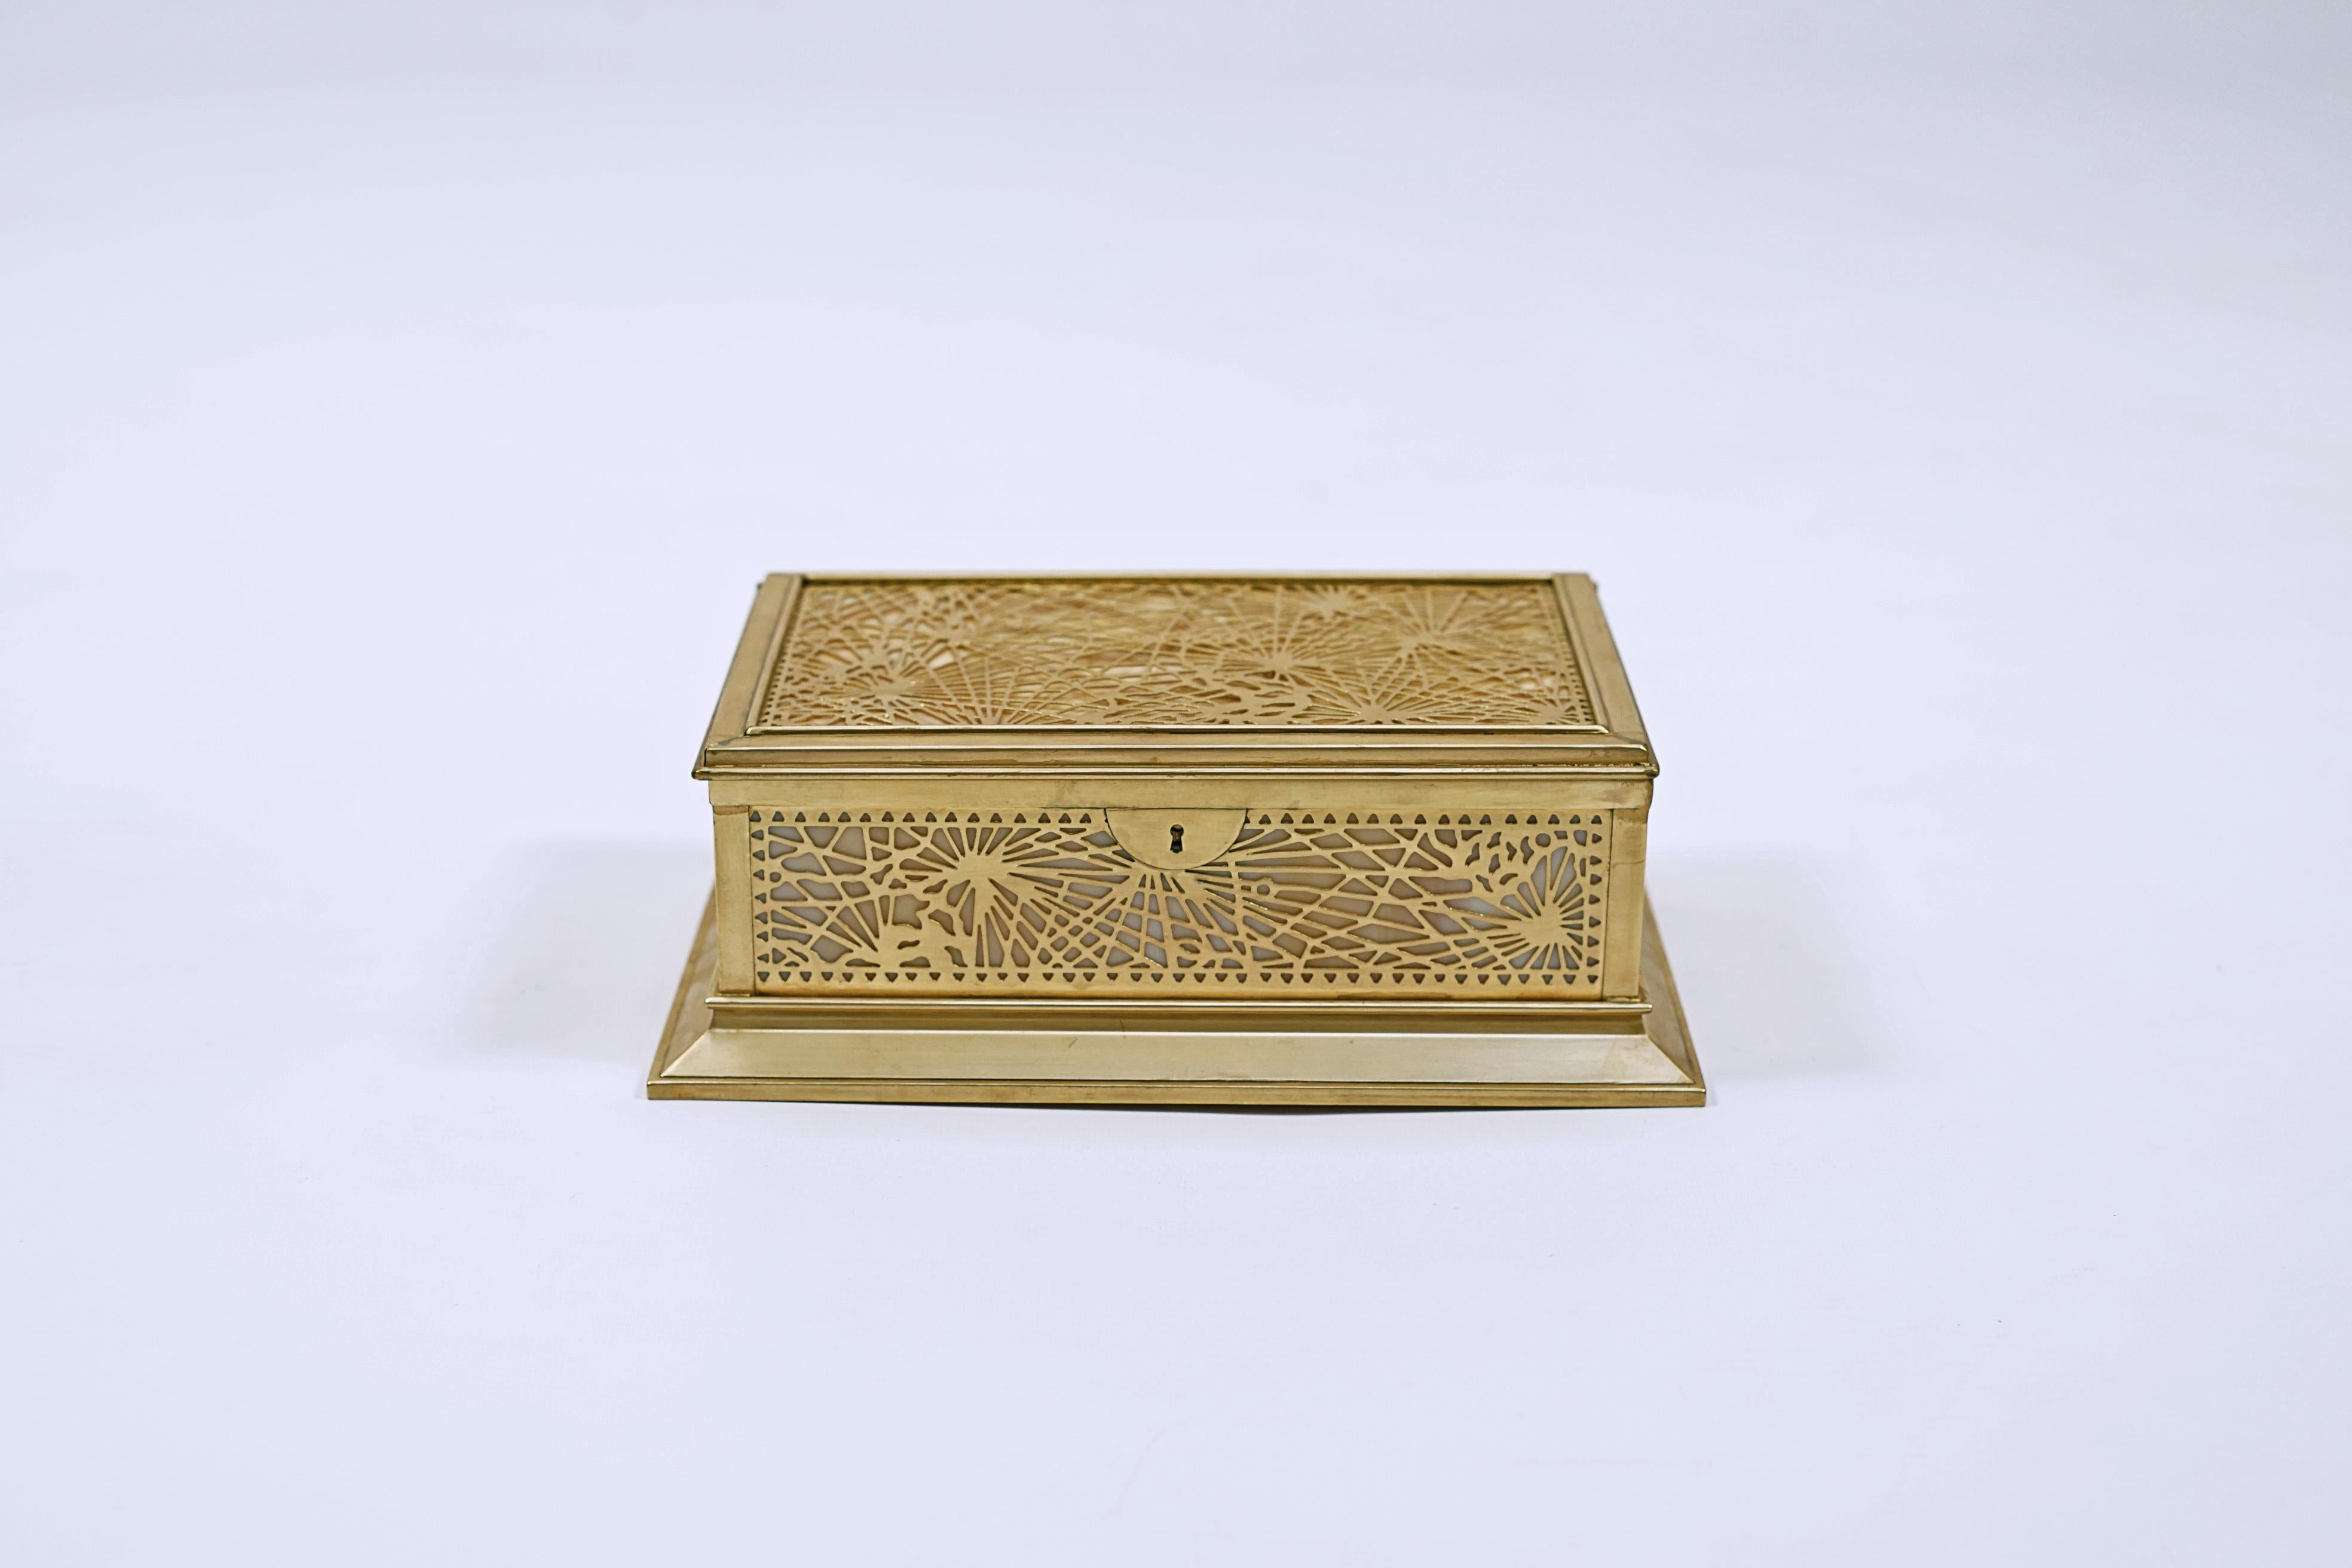 Boîte en bronze avec pâte de verre blanche et orange, modèle Pine Needle, réalisée par TIFFANY & Co, (1837 à nos jours).

Signé TIFFANY STUDIOS, NEW YORK, 823.

ÉTATS-UNIS, VERS 1910.